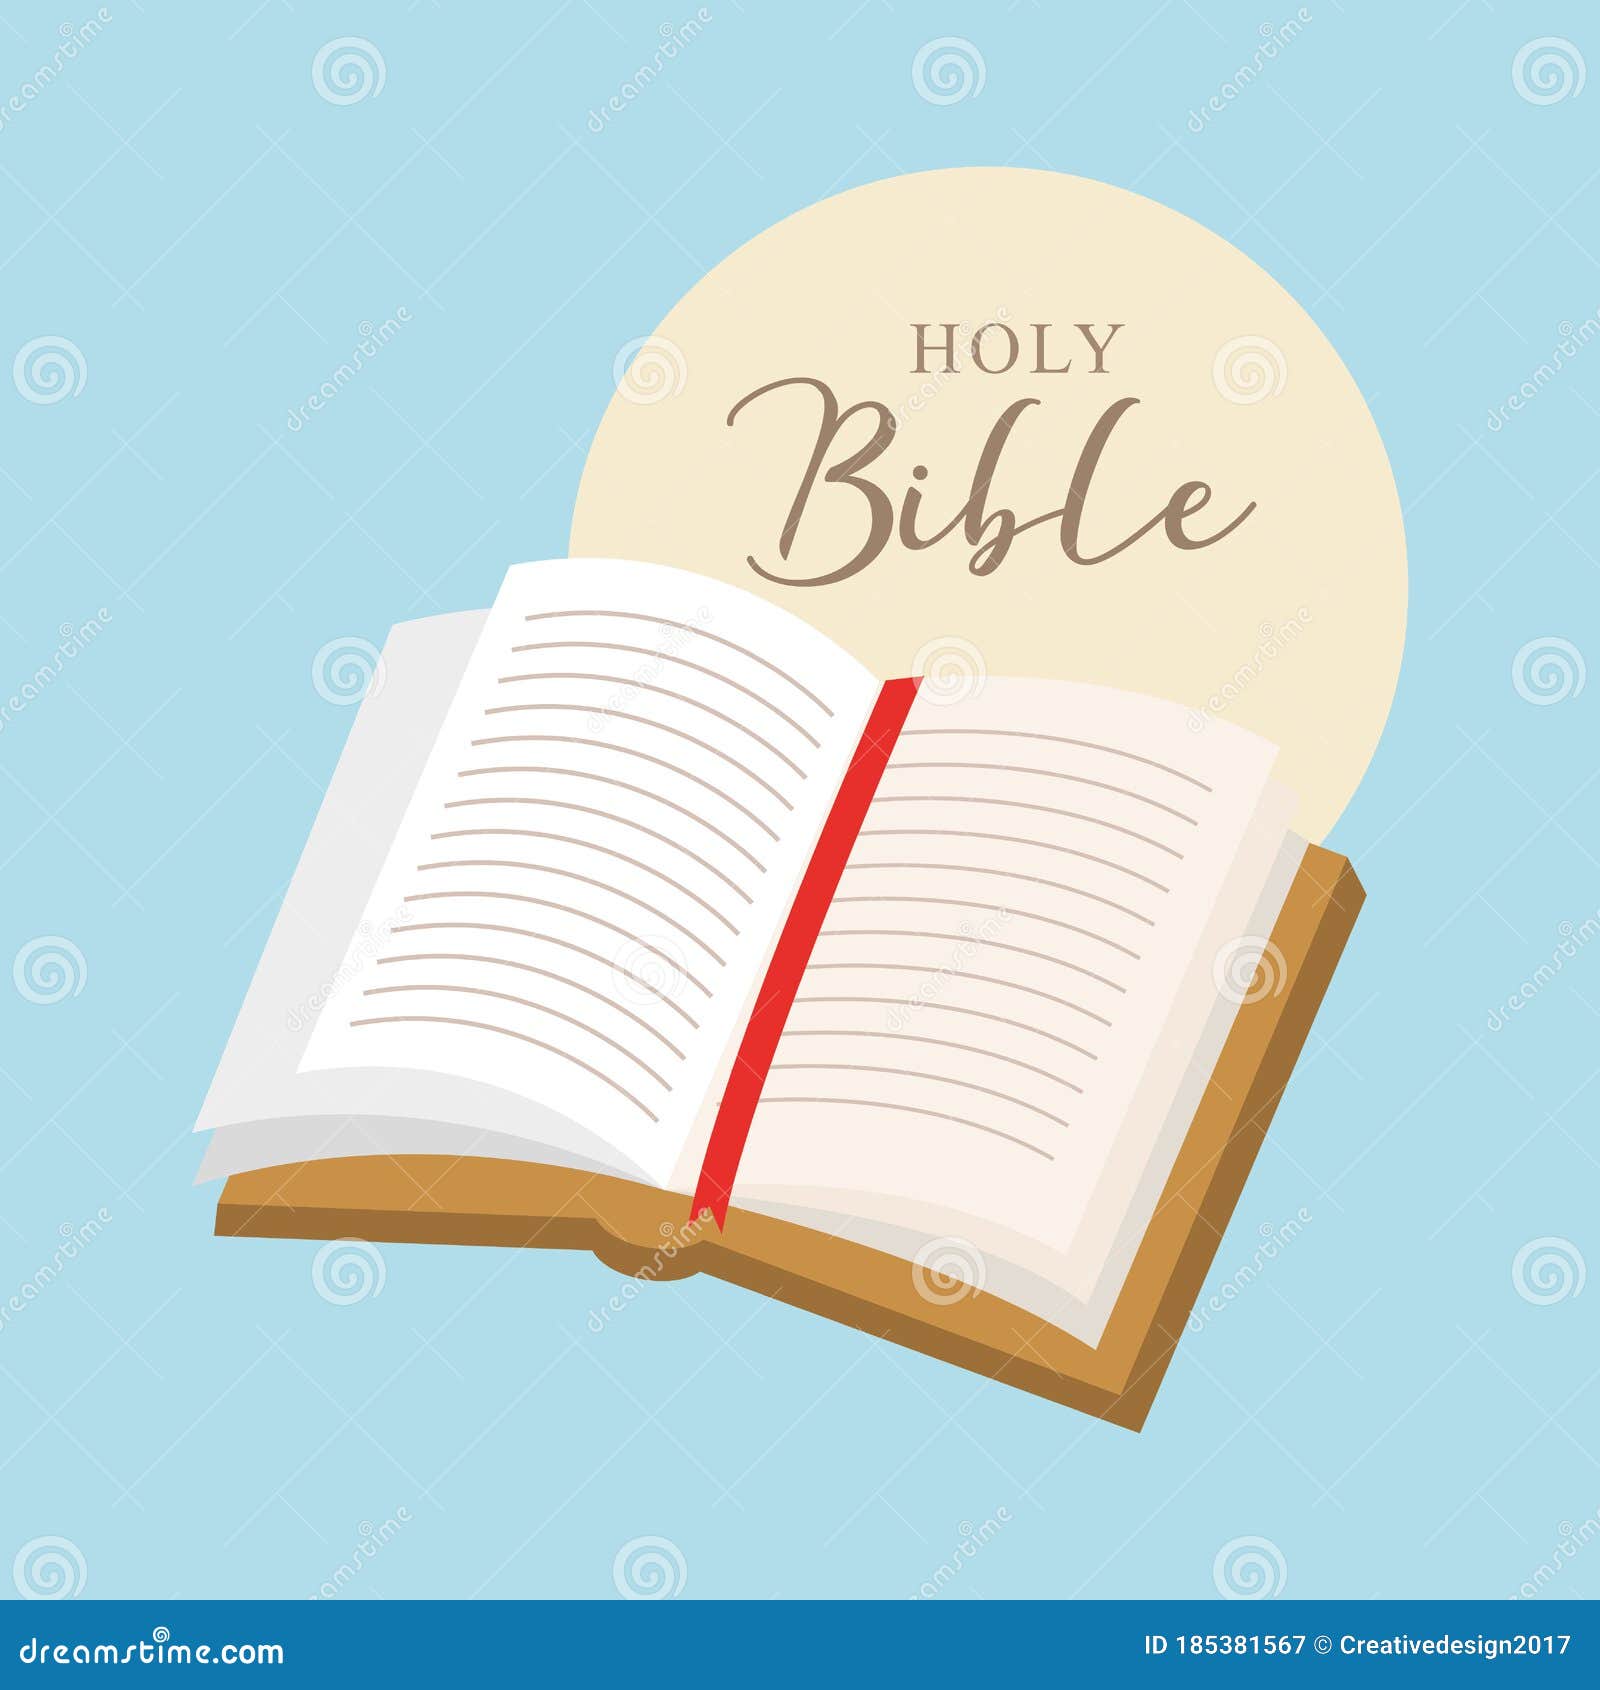 Open bible cartoon. vector stock vector. Illustration of gospel - 185381567